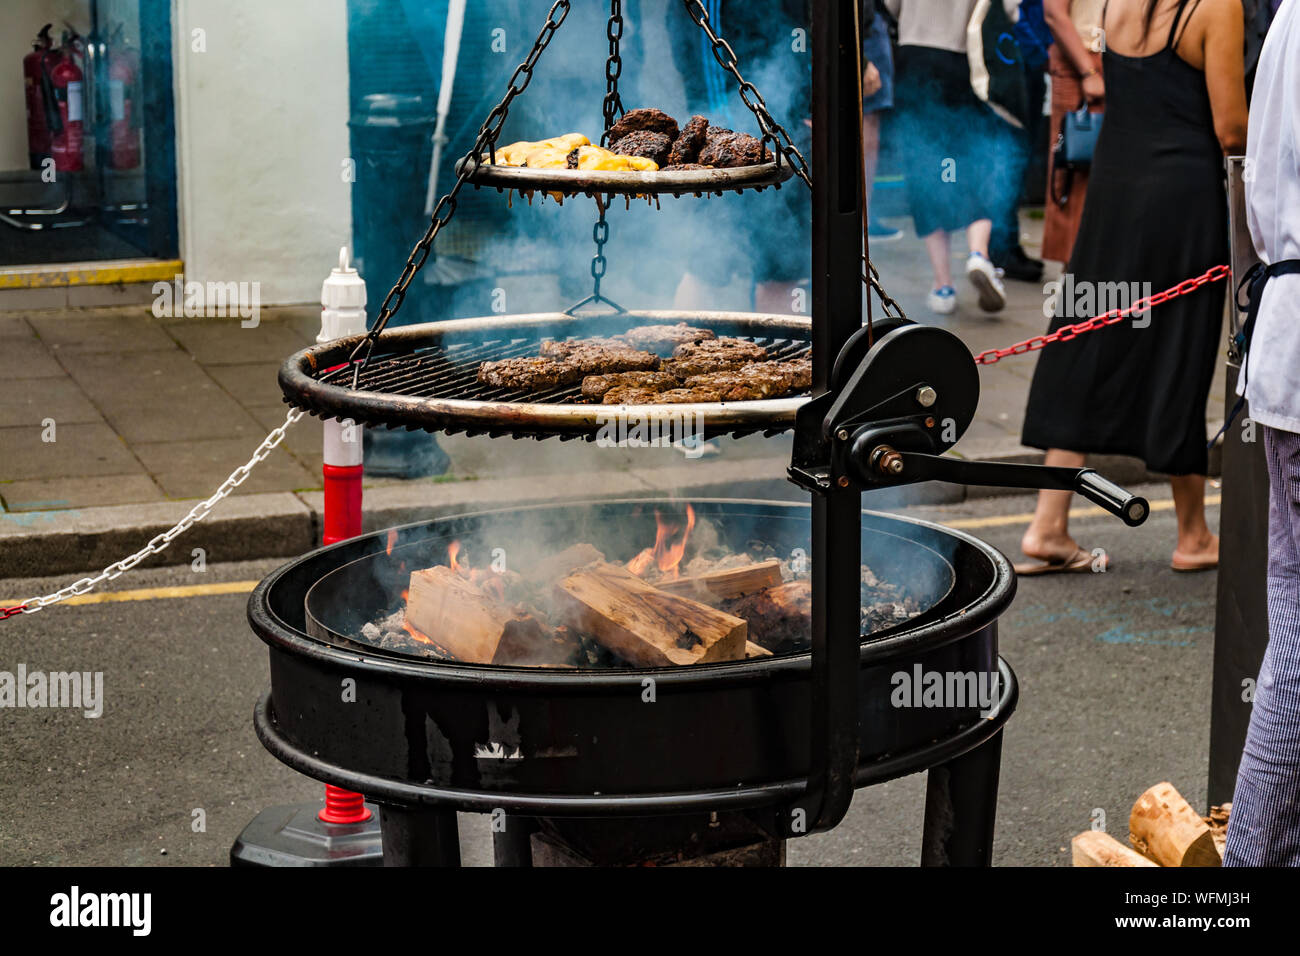 Holz brennen Grill auf der Straße kochen Meeresfrüchte Burger. Dalkey,  Dublin, Irland, 25. August 2019. Meeresfrüchte "dalkey Lobster Festival  Stockfotografie - Alamy